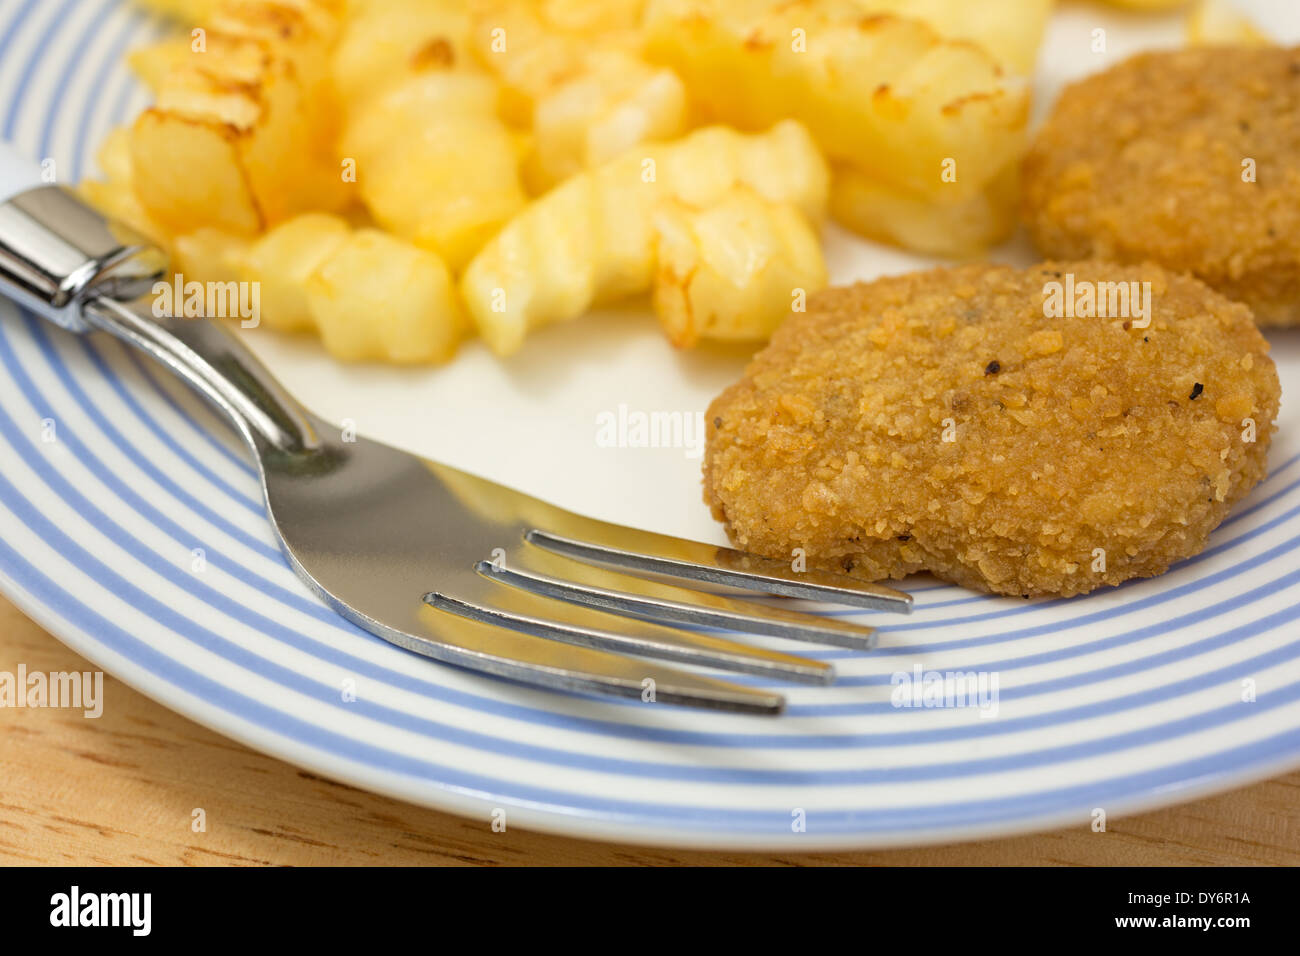 Fermer la vue d'un repas de croquettes de poulet avec frites sur une assiette avec une fourchette. Banque D'Images